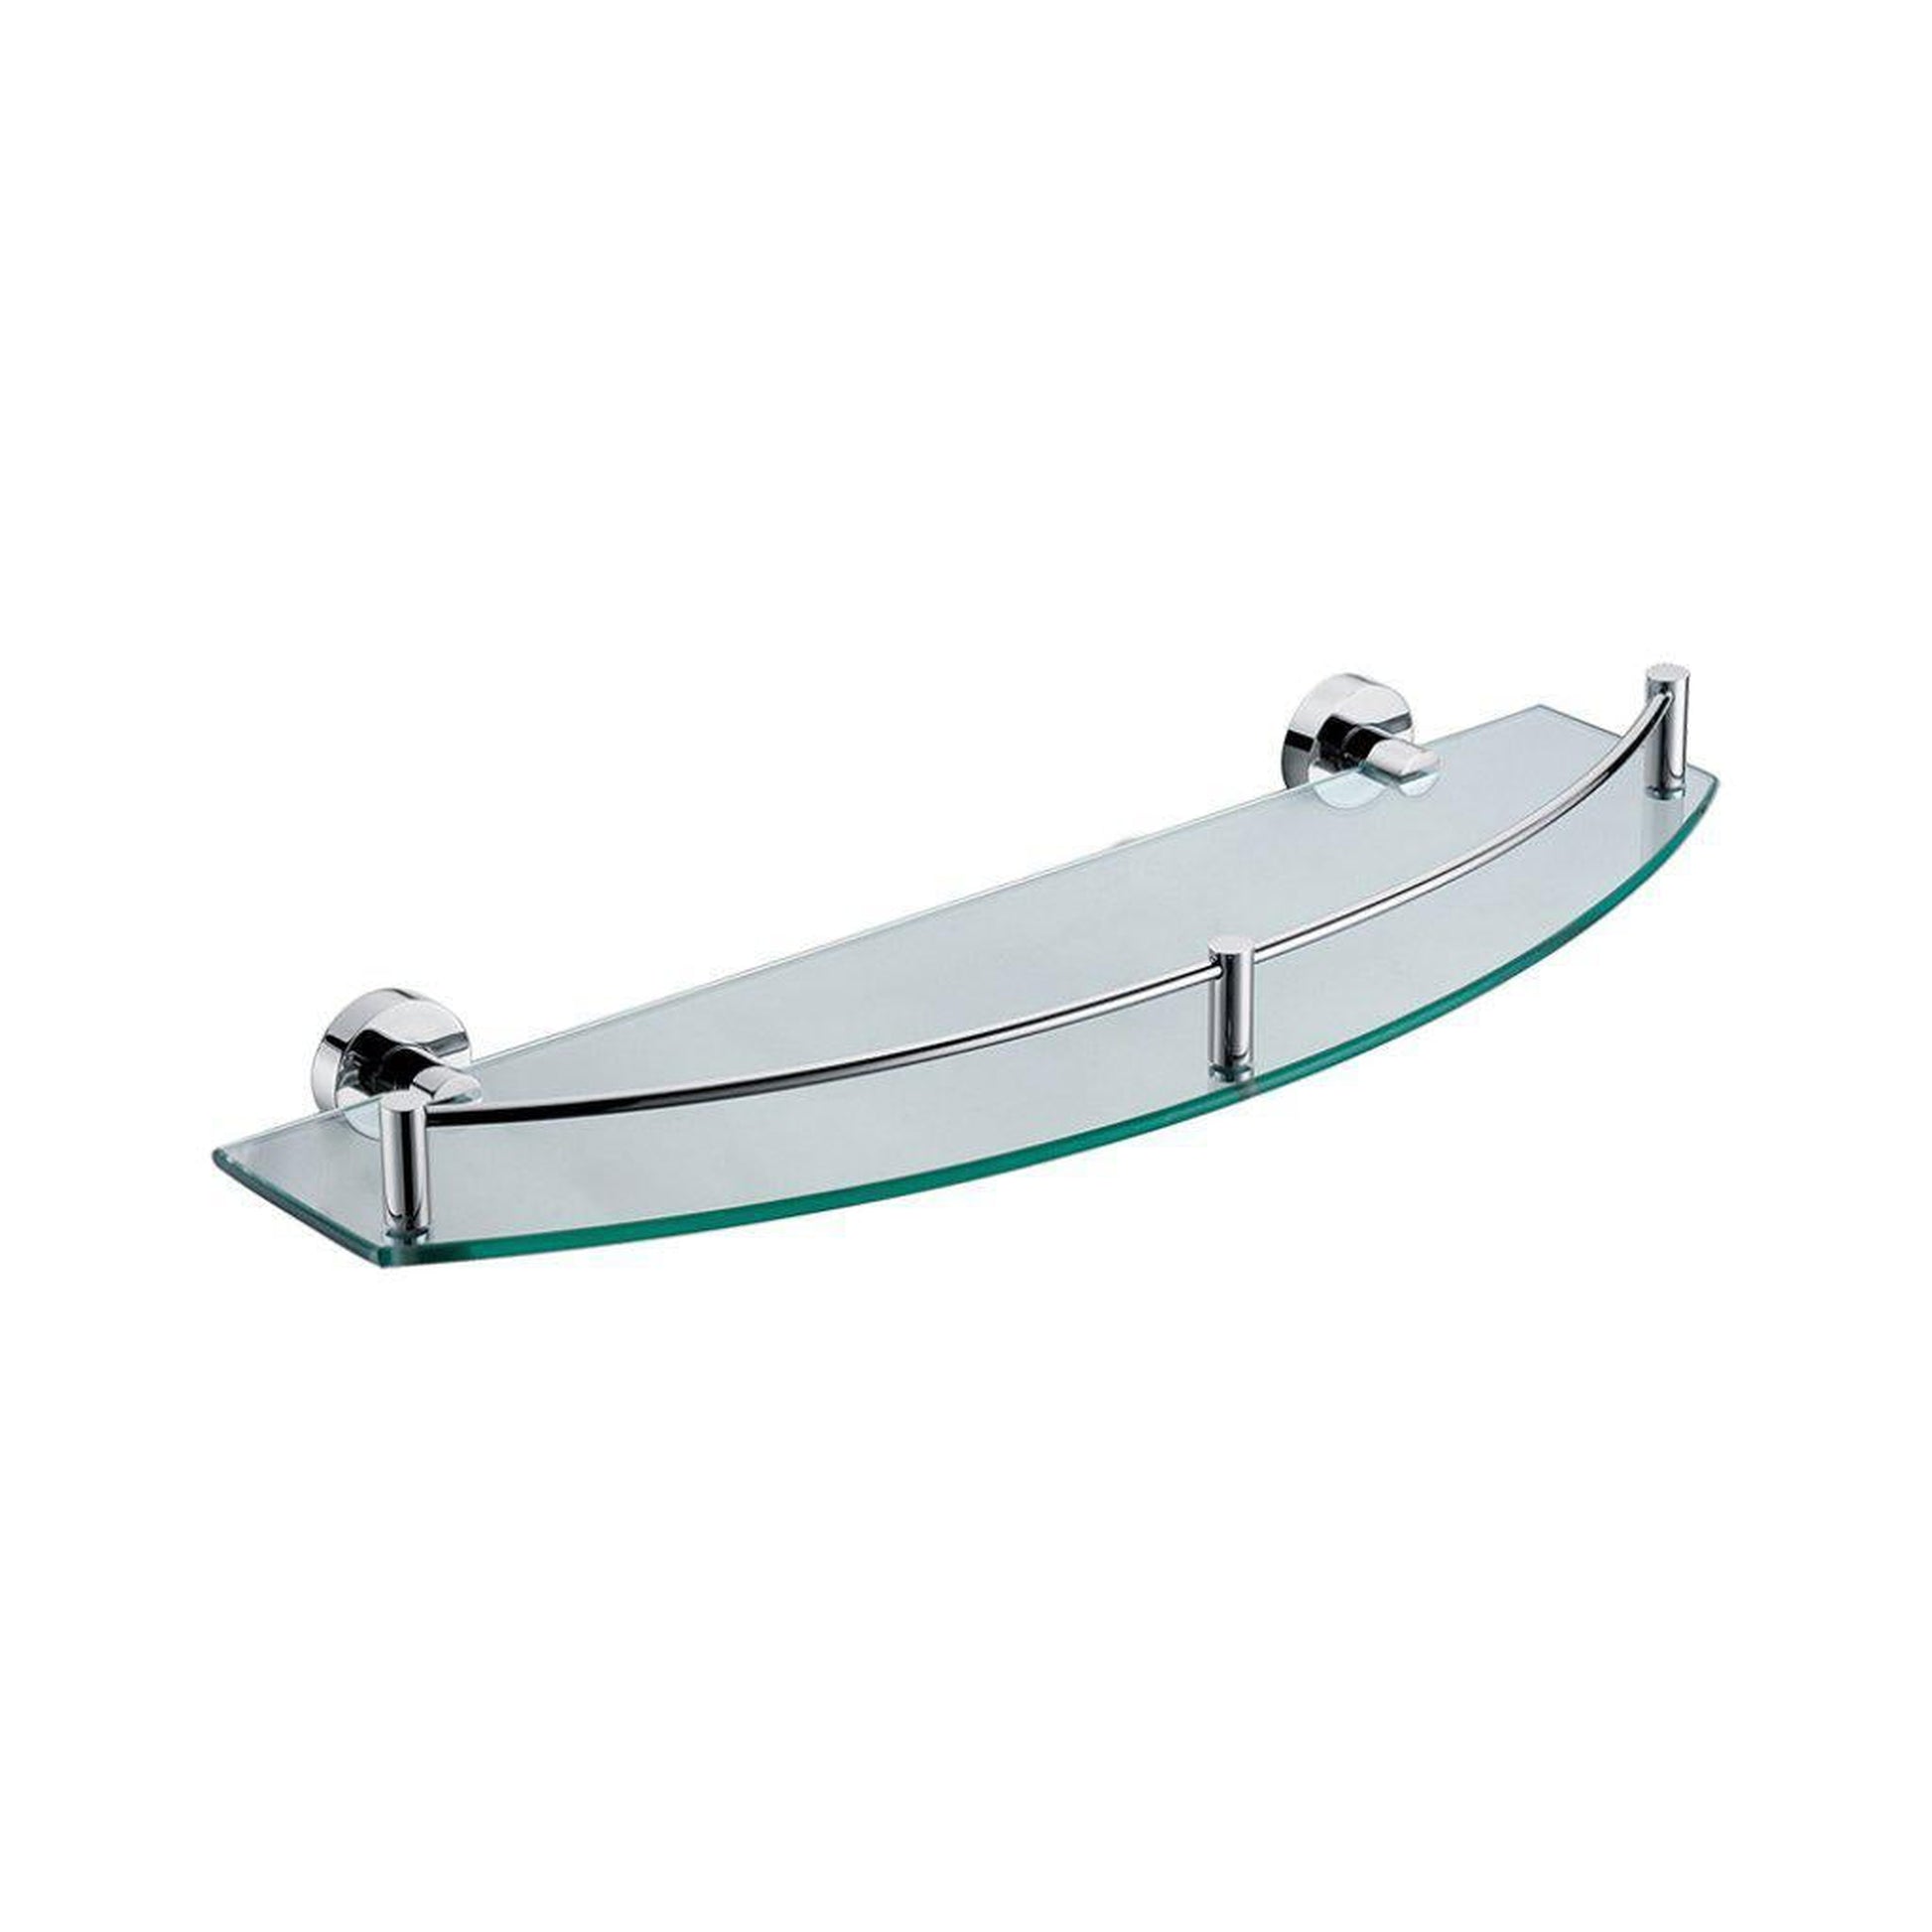 ALFI Brand AB9547 Polished Chrome Wall-Mounted Glass Shower Shelf Bathroom Accessory